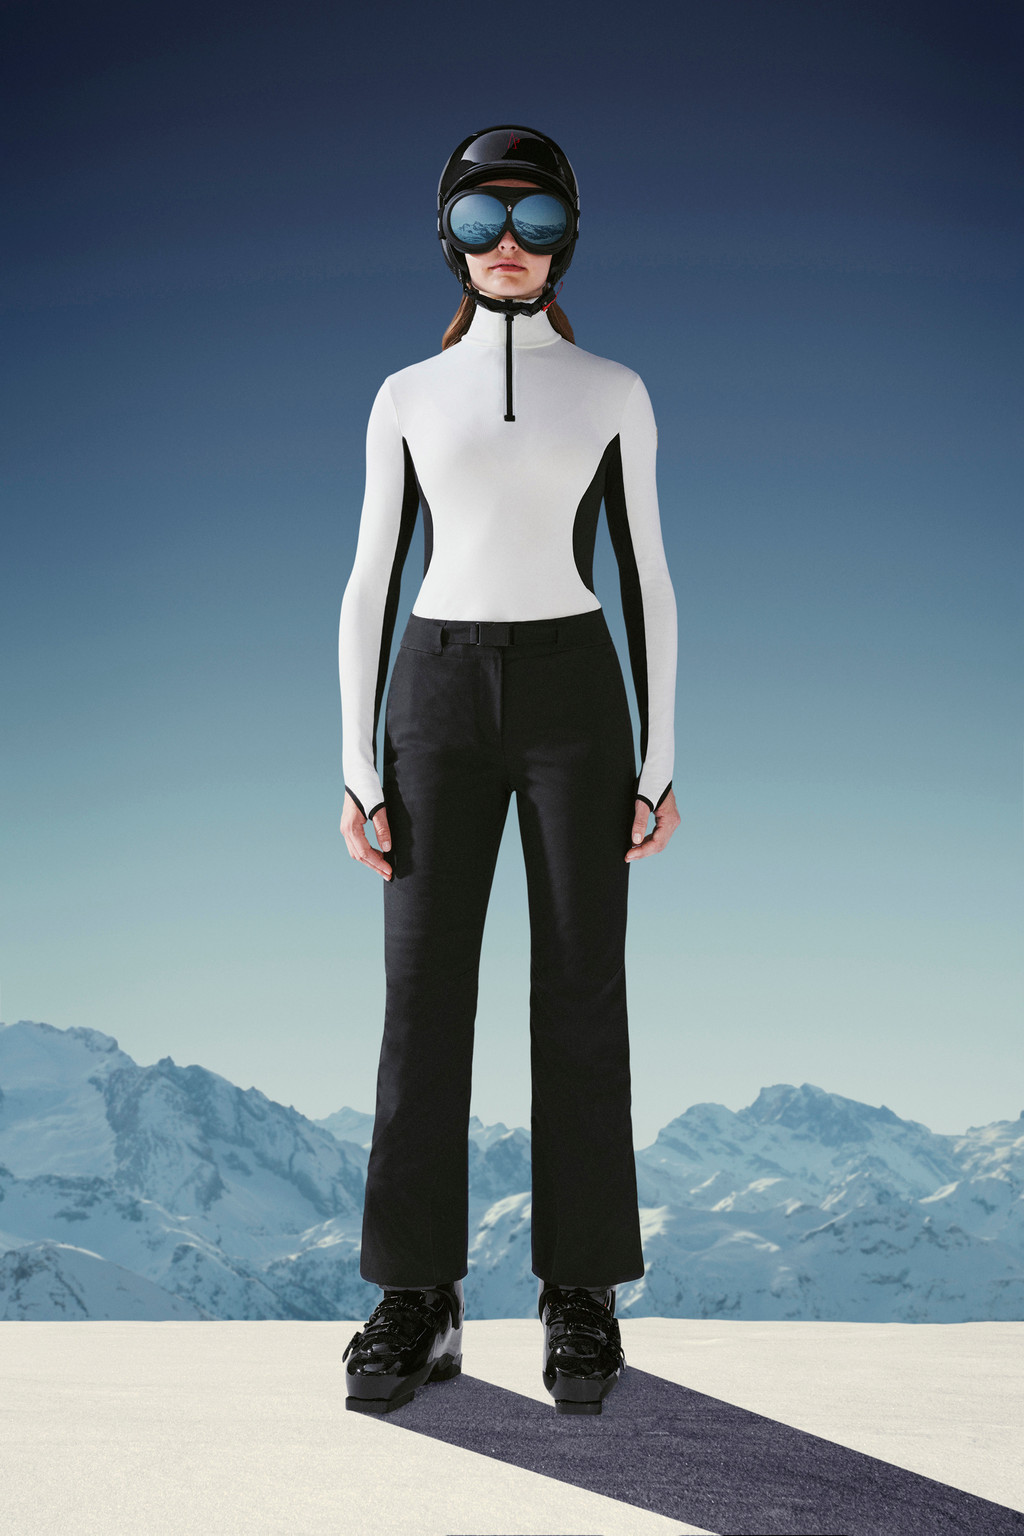 Spyder Women's Echo GTX Pant - Black - TeamSkiWear | Ski Racing Shop